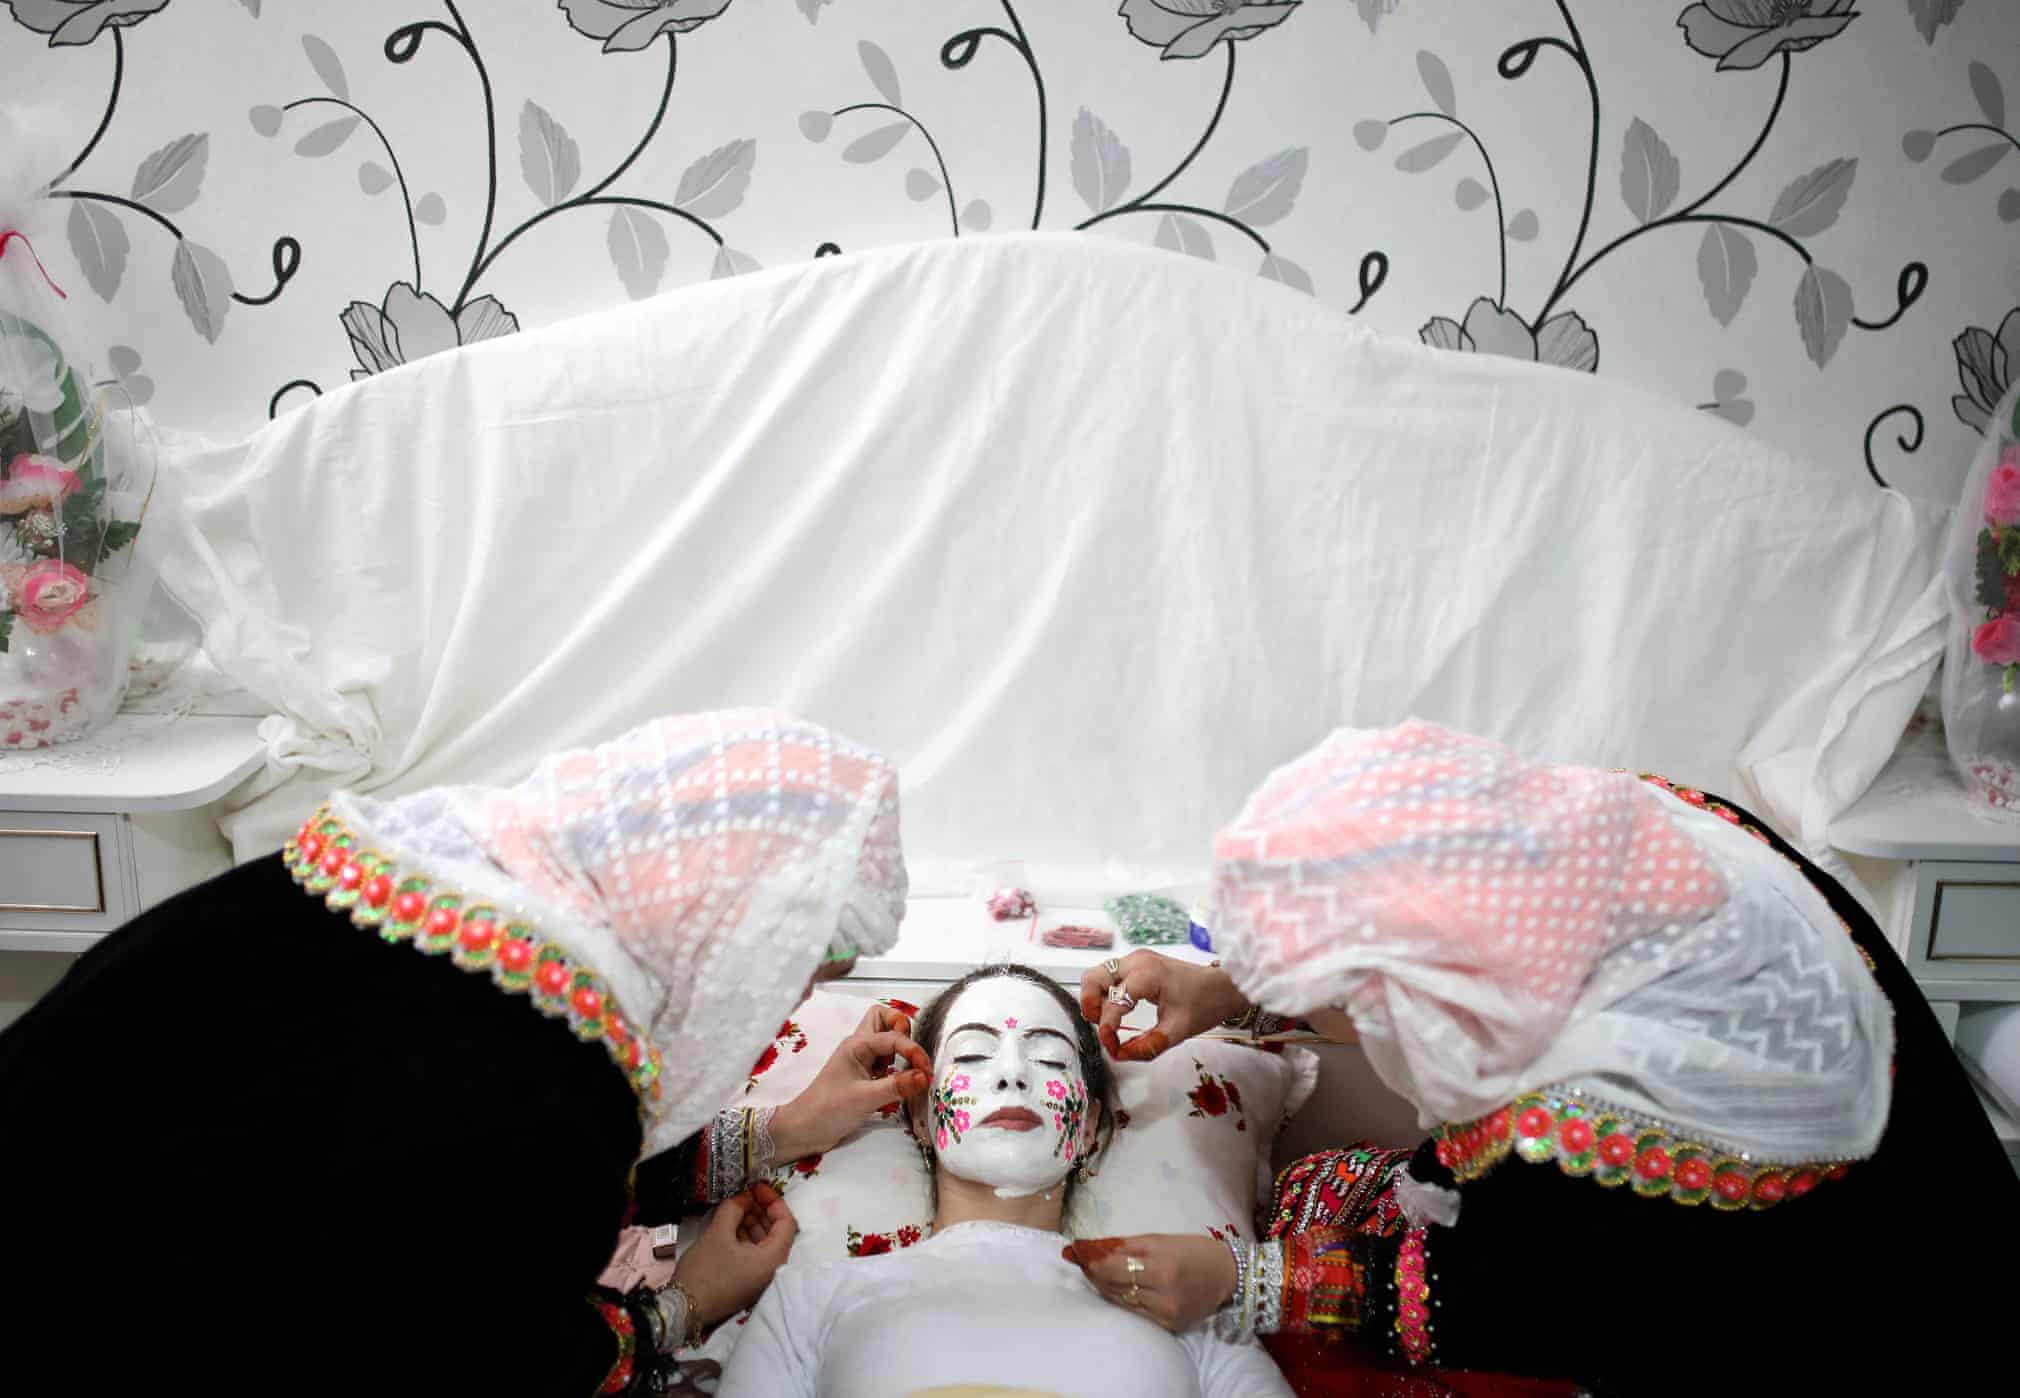 آرایش یک عروس در دهکده دورافتاده  + عکس 